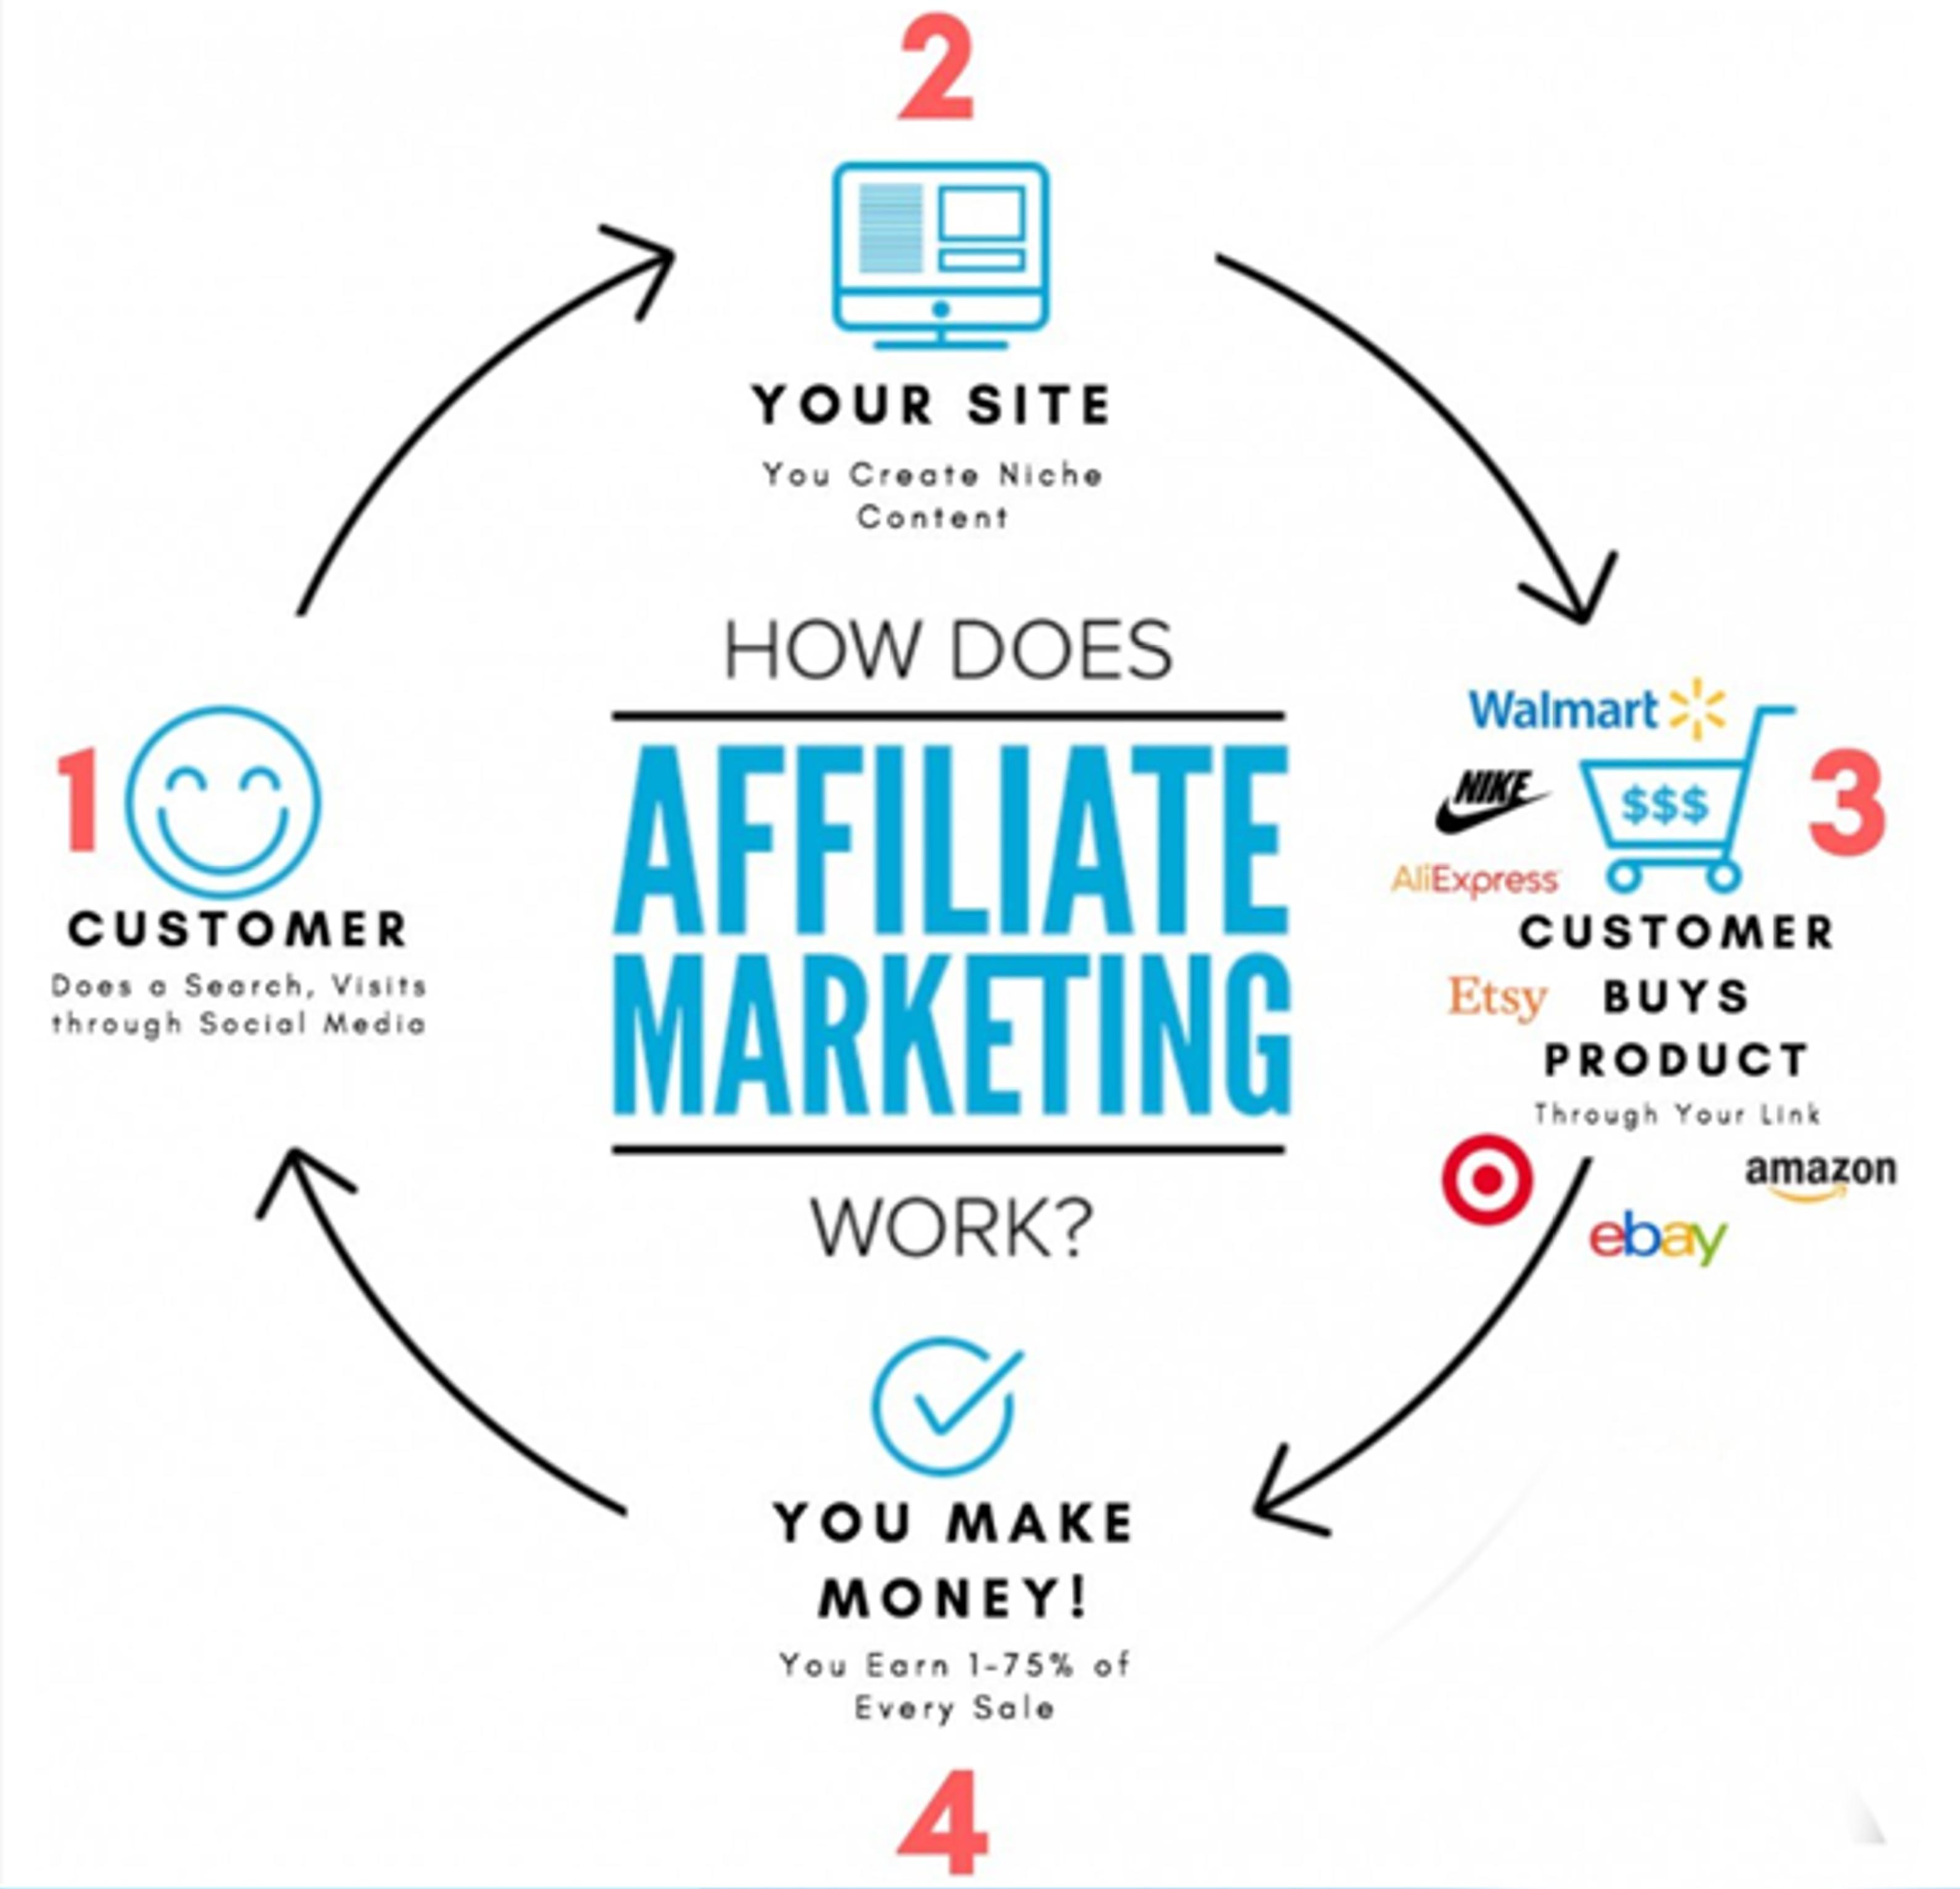 Let get started affiliate marketing